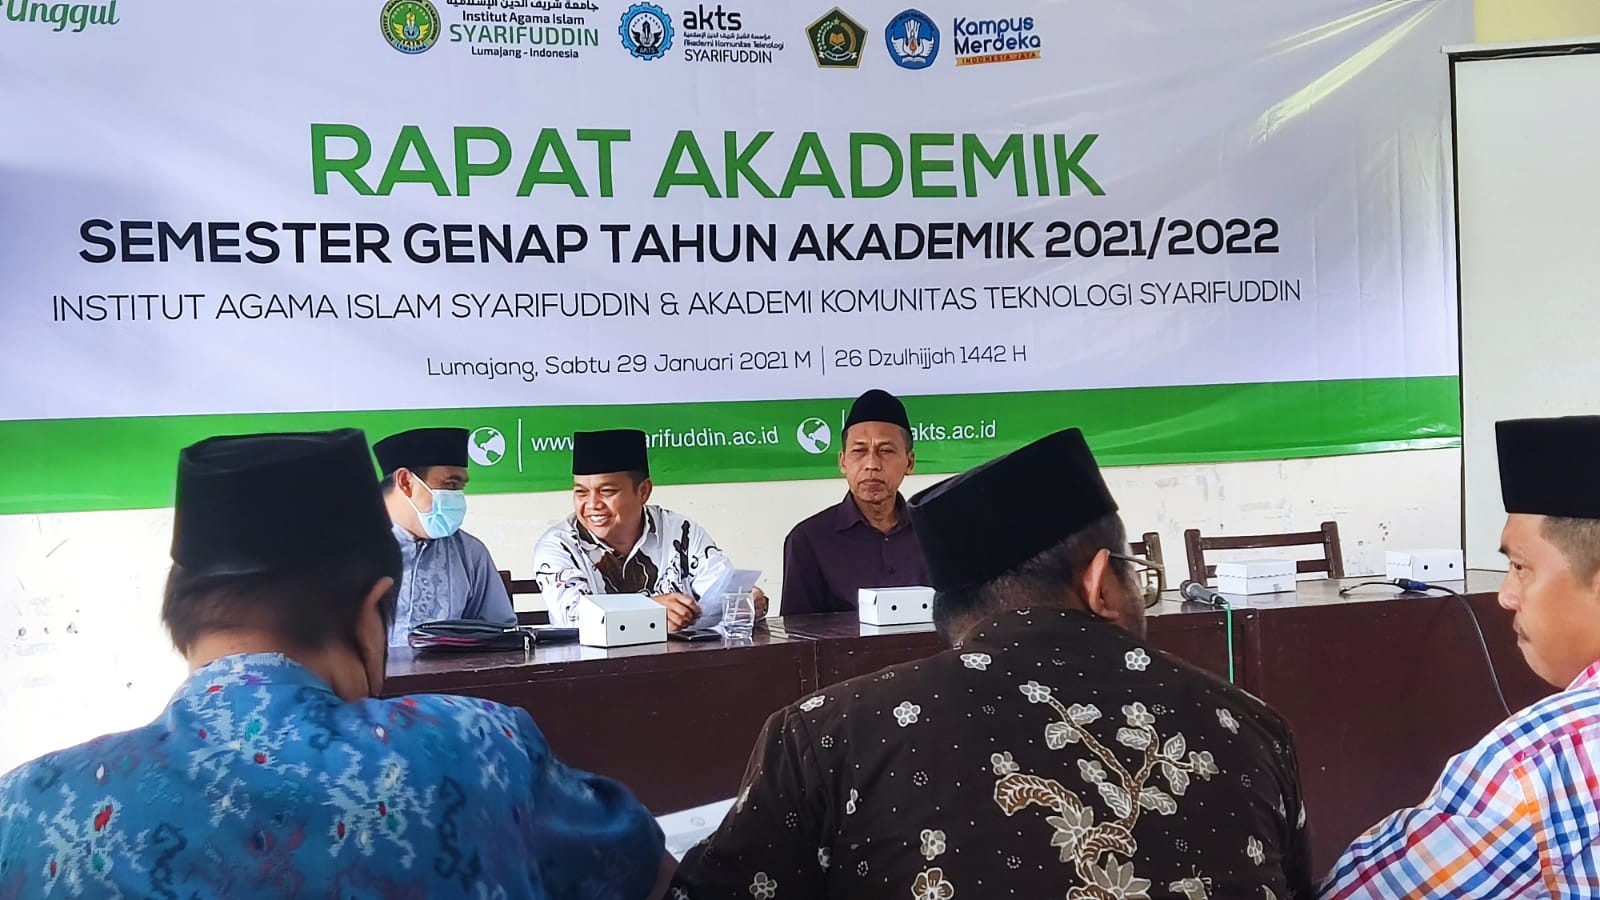 Rektor IAI Syarifuddin Pimpin Rapat Akademik Semester Genap 2021/2022